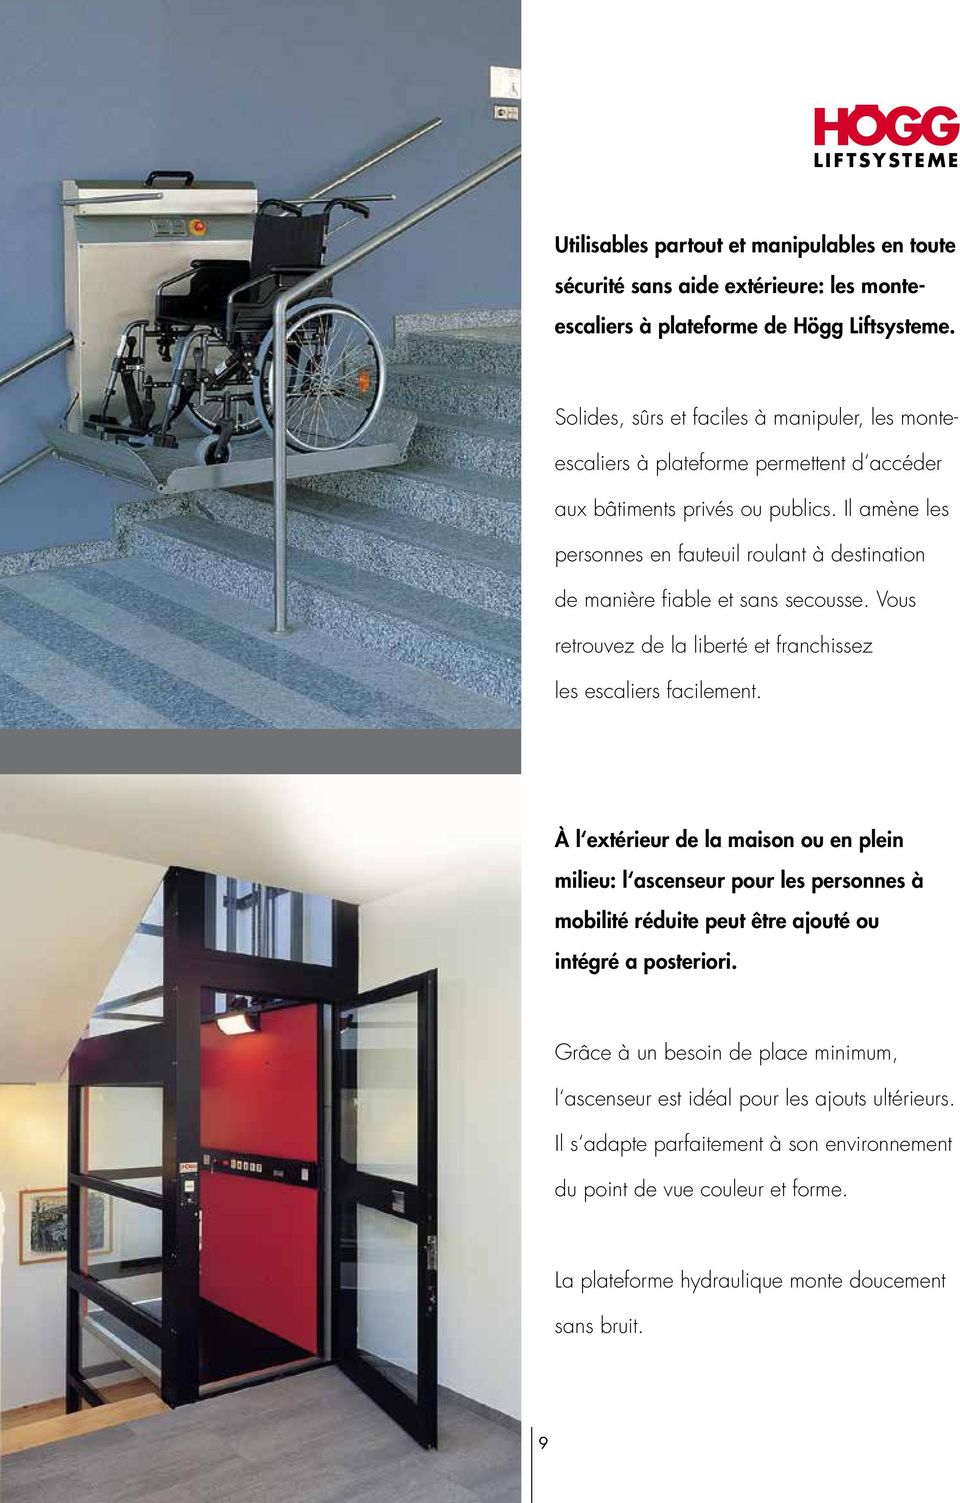 Il amène les personnes en fauteuil roulant à destination de manière fiable et sans secousse. Vous retrouvez de la liberté et franchissez les escaliers facilement.